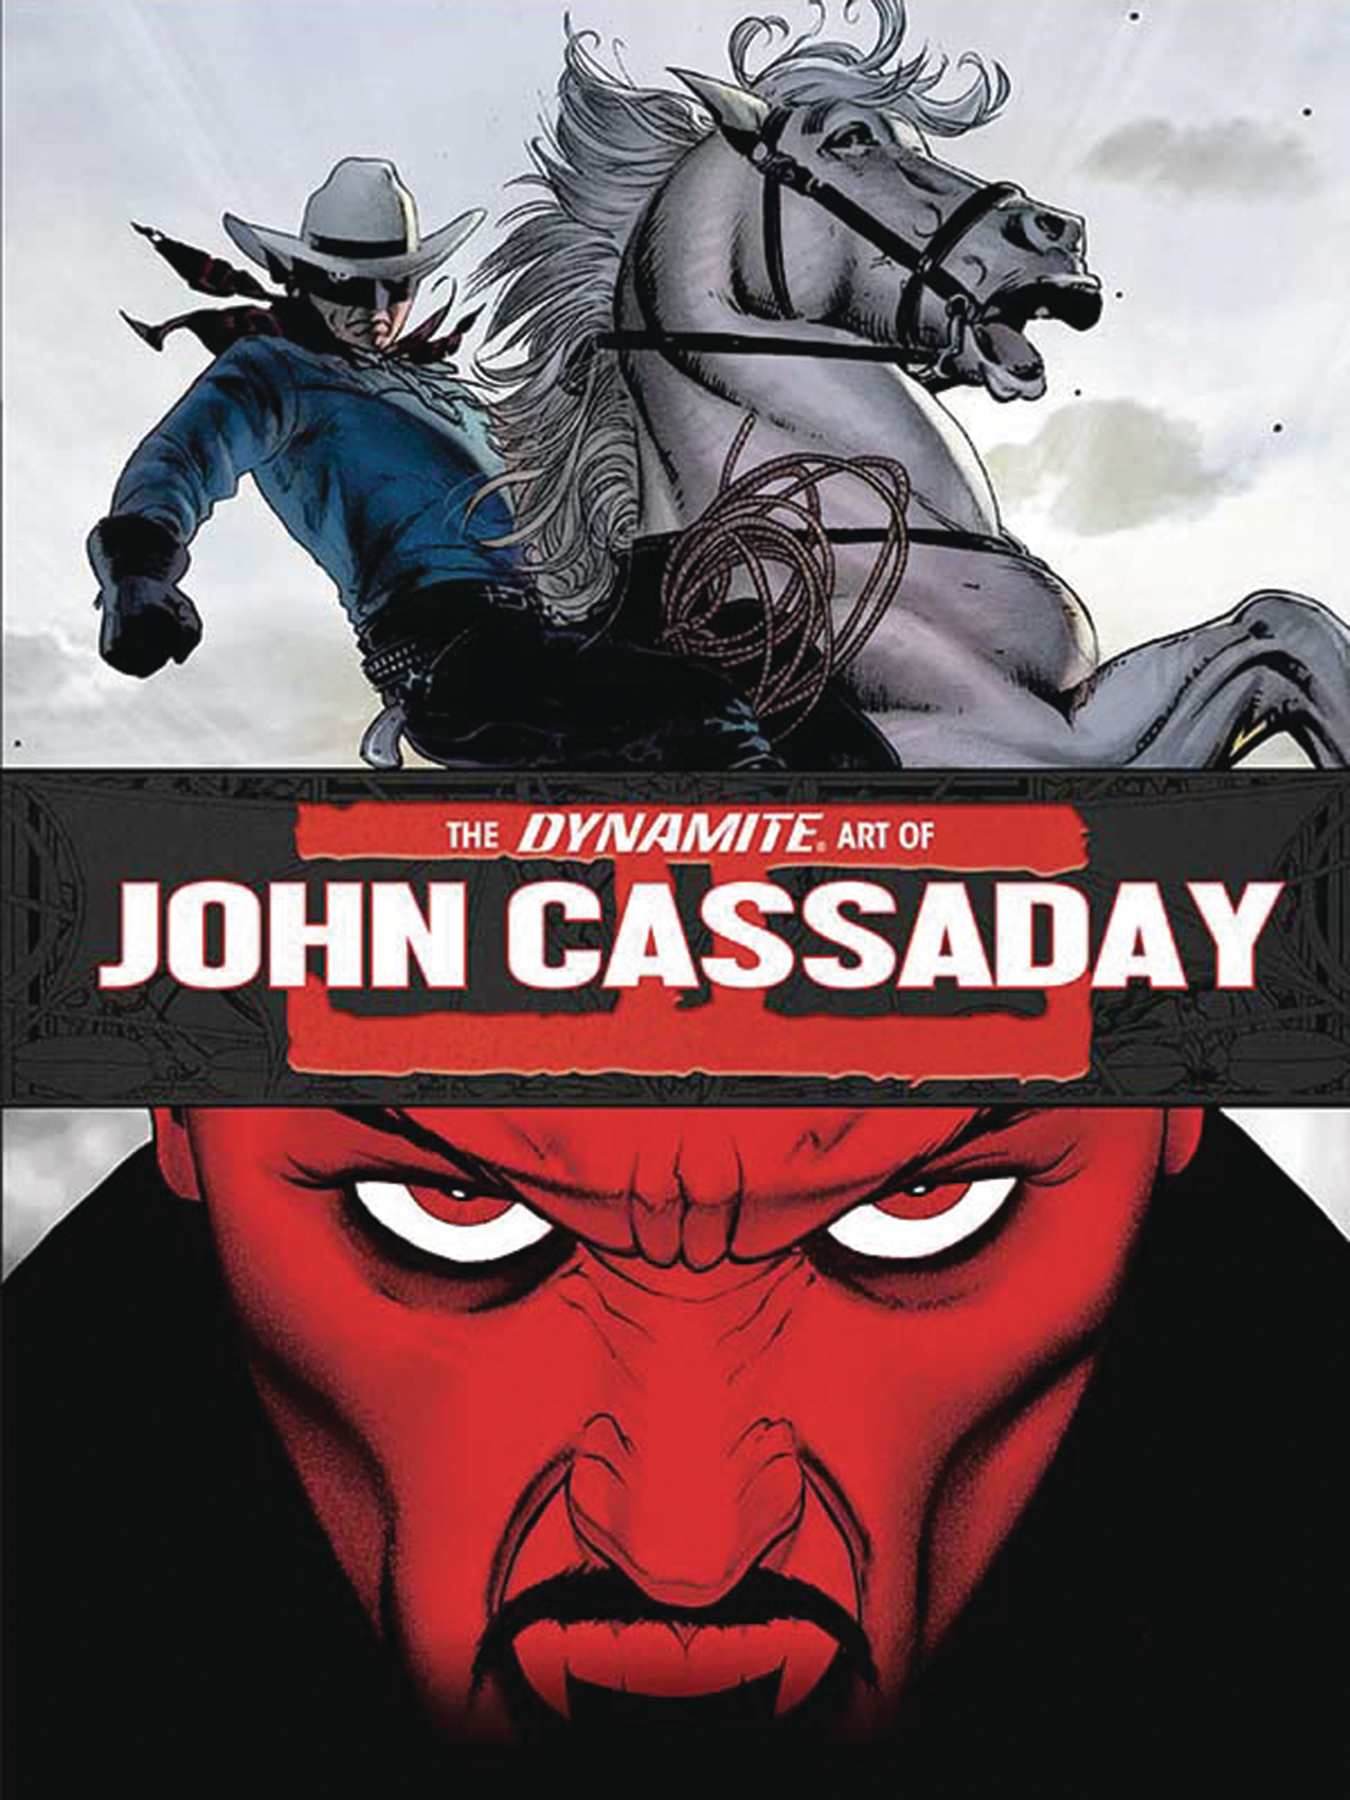 Dynamite Art of John Cassaday Hardcover